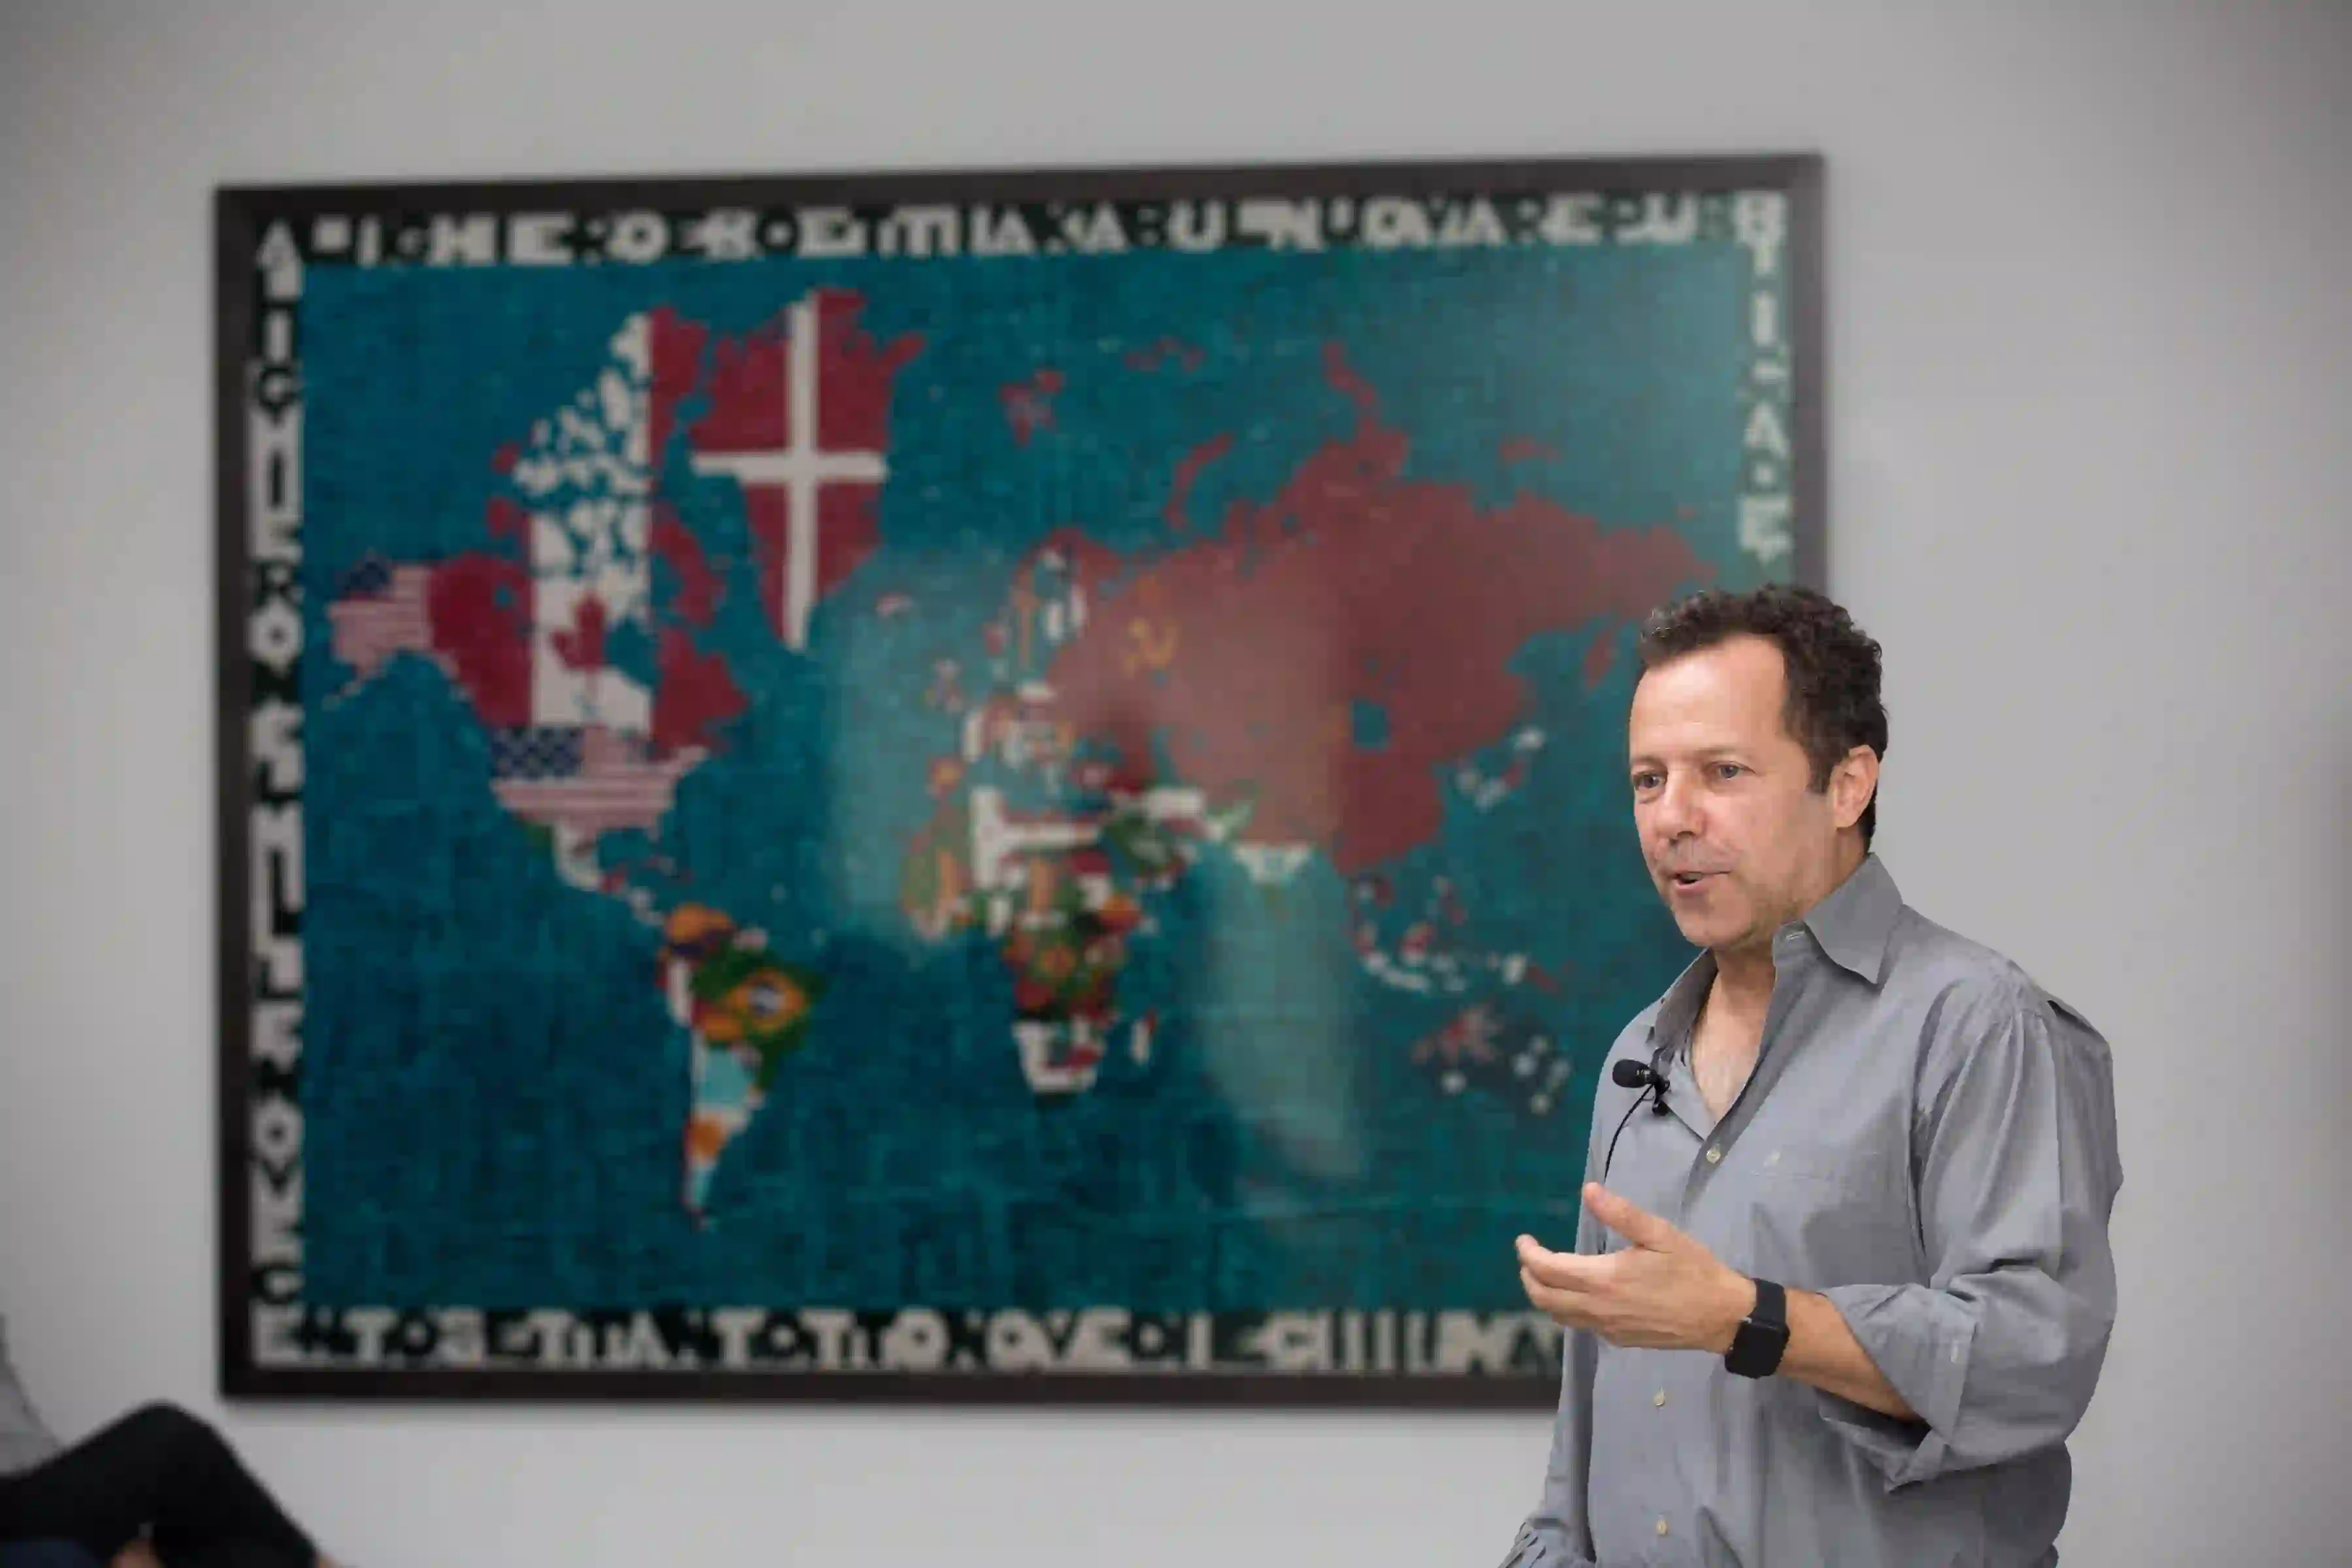 Vik Muniz speaks at Magazzino Italian Art Foundation